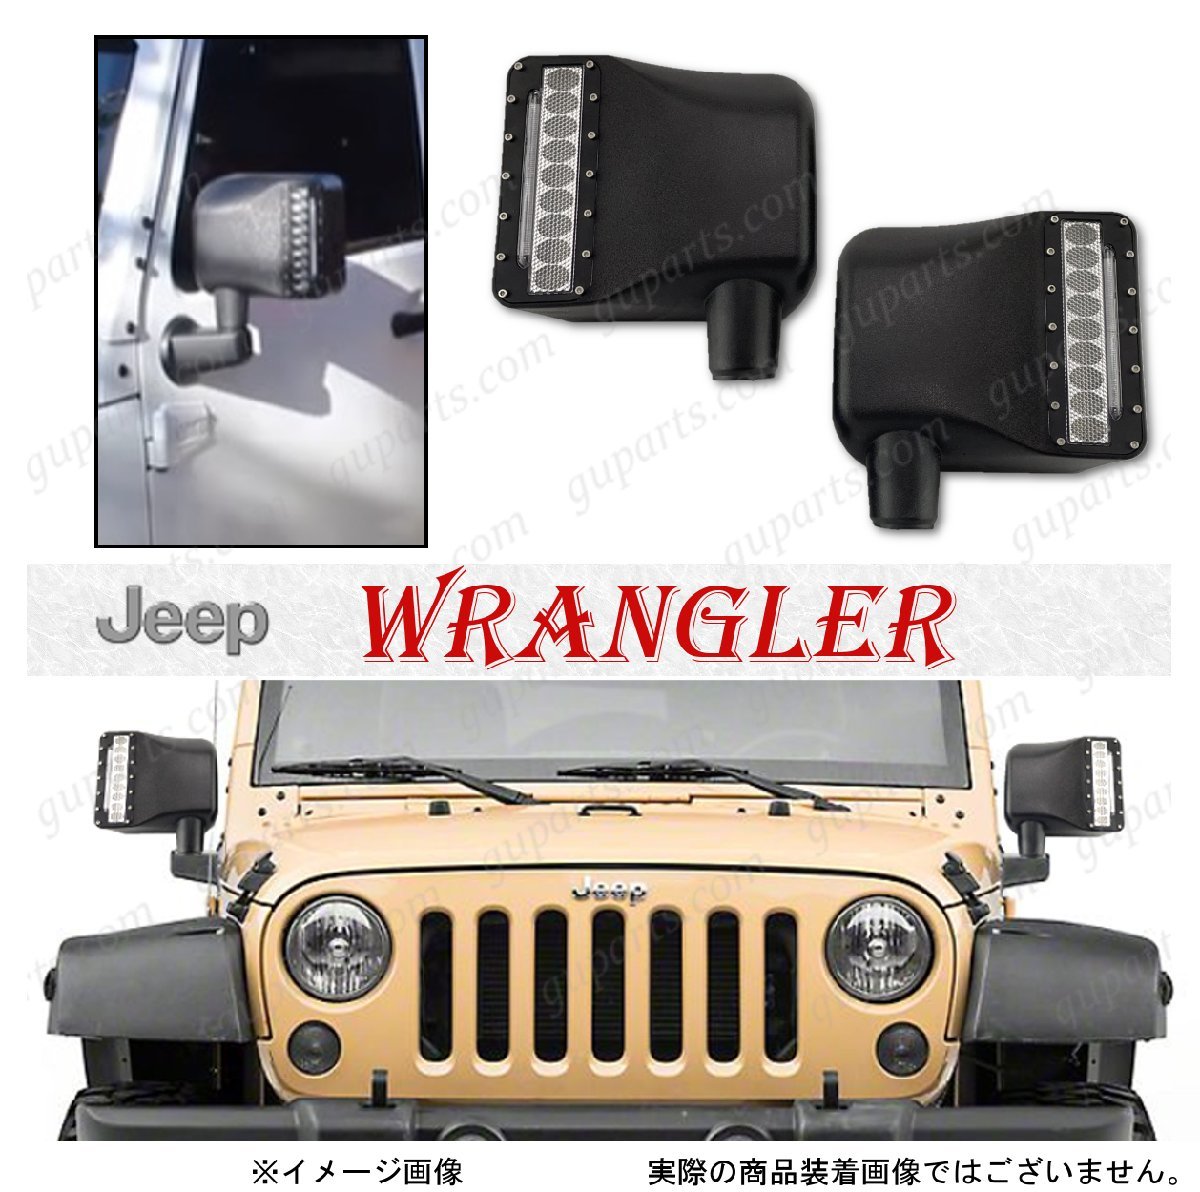  Jeep Wrangler JK боковой корпус зеркала двери LED лампа дневной свет указатель поворота DRL левый и правый в комплекте 